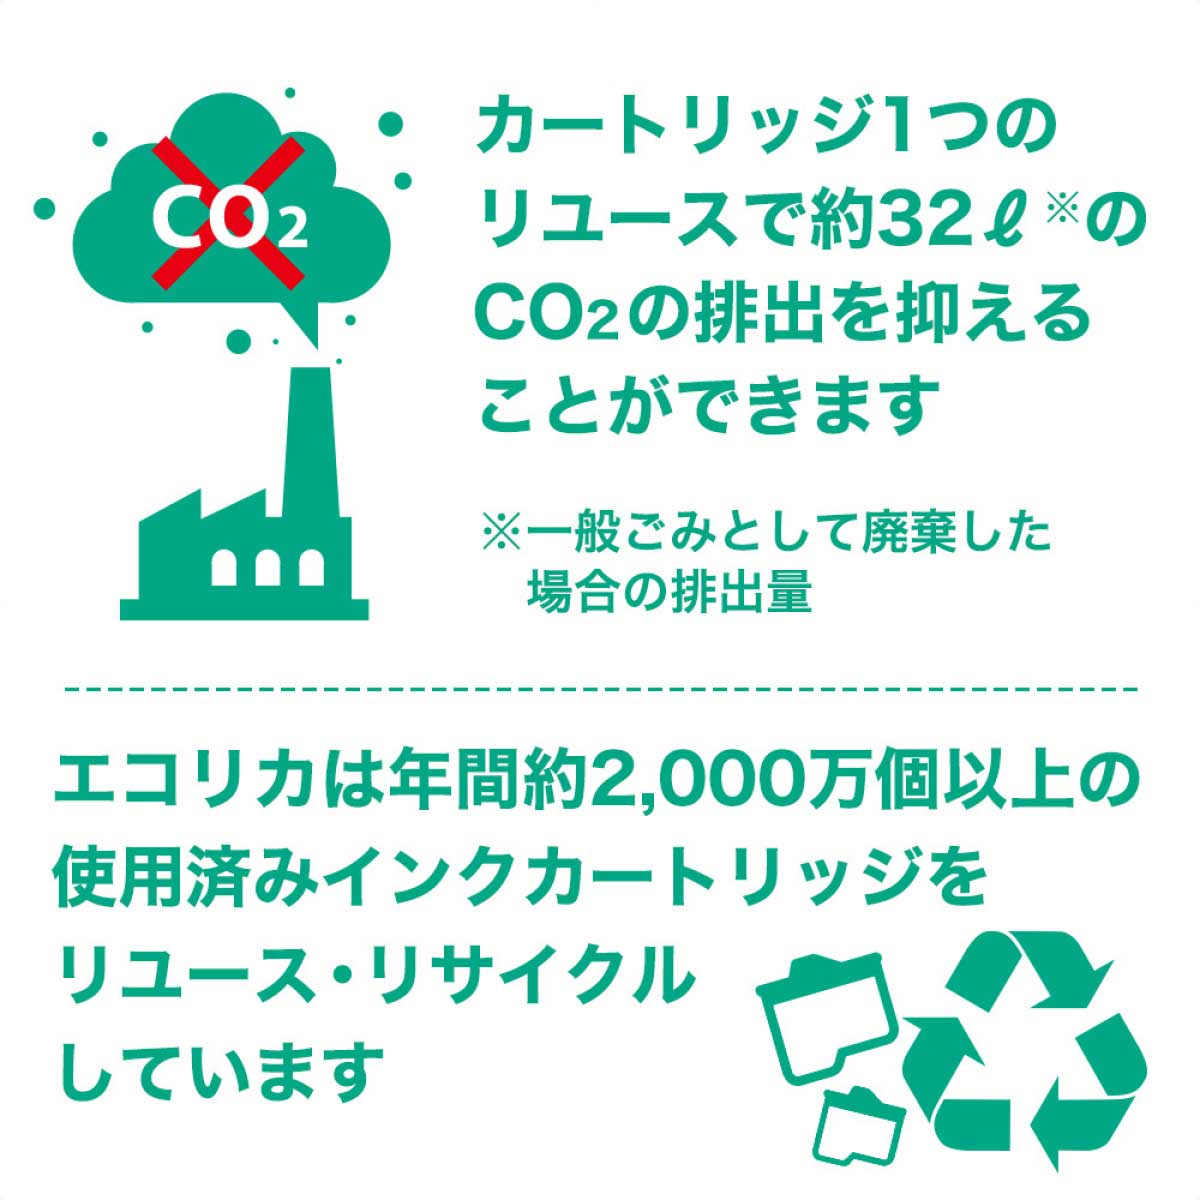 エコリカ【キャノン用】 BCI 380・381 互換リサイクルインクカートリッジ